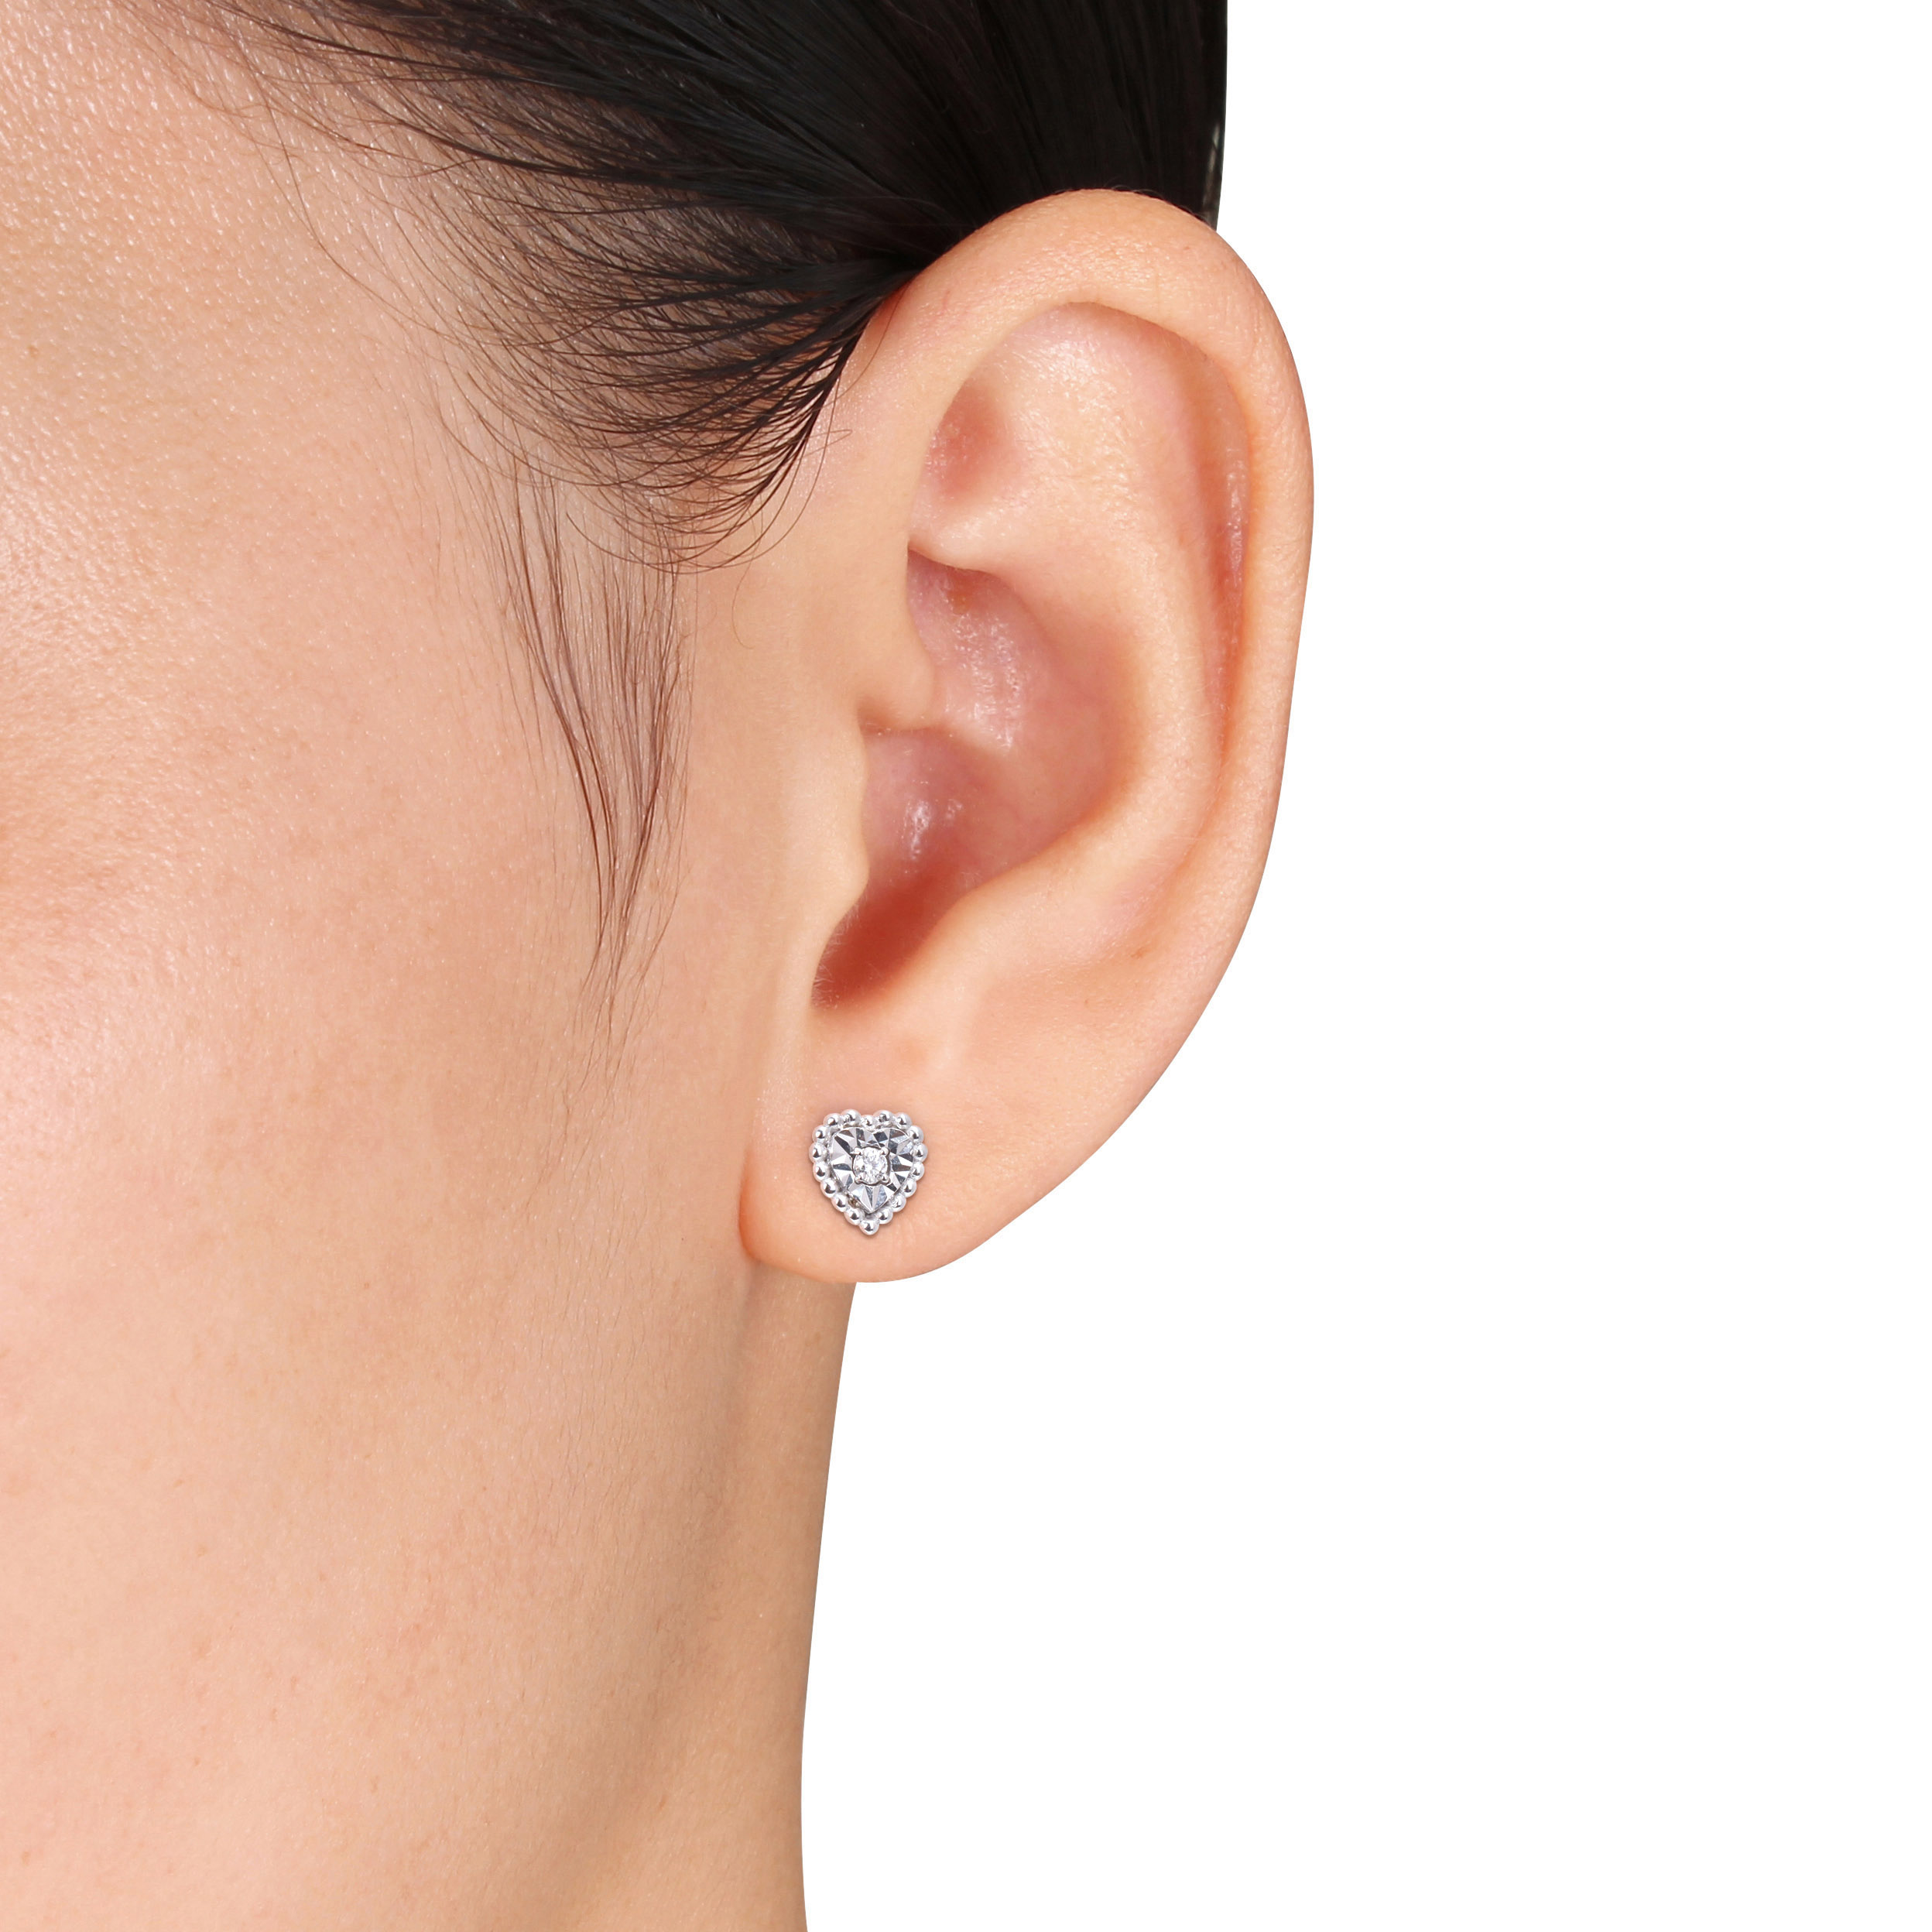 1/10 CT TW Diamond Heart Halo Stud Earrings in 14k White Gold